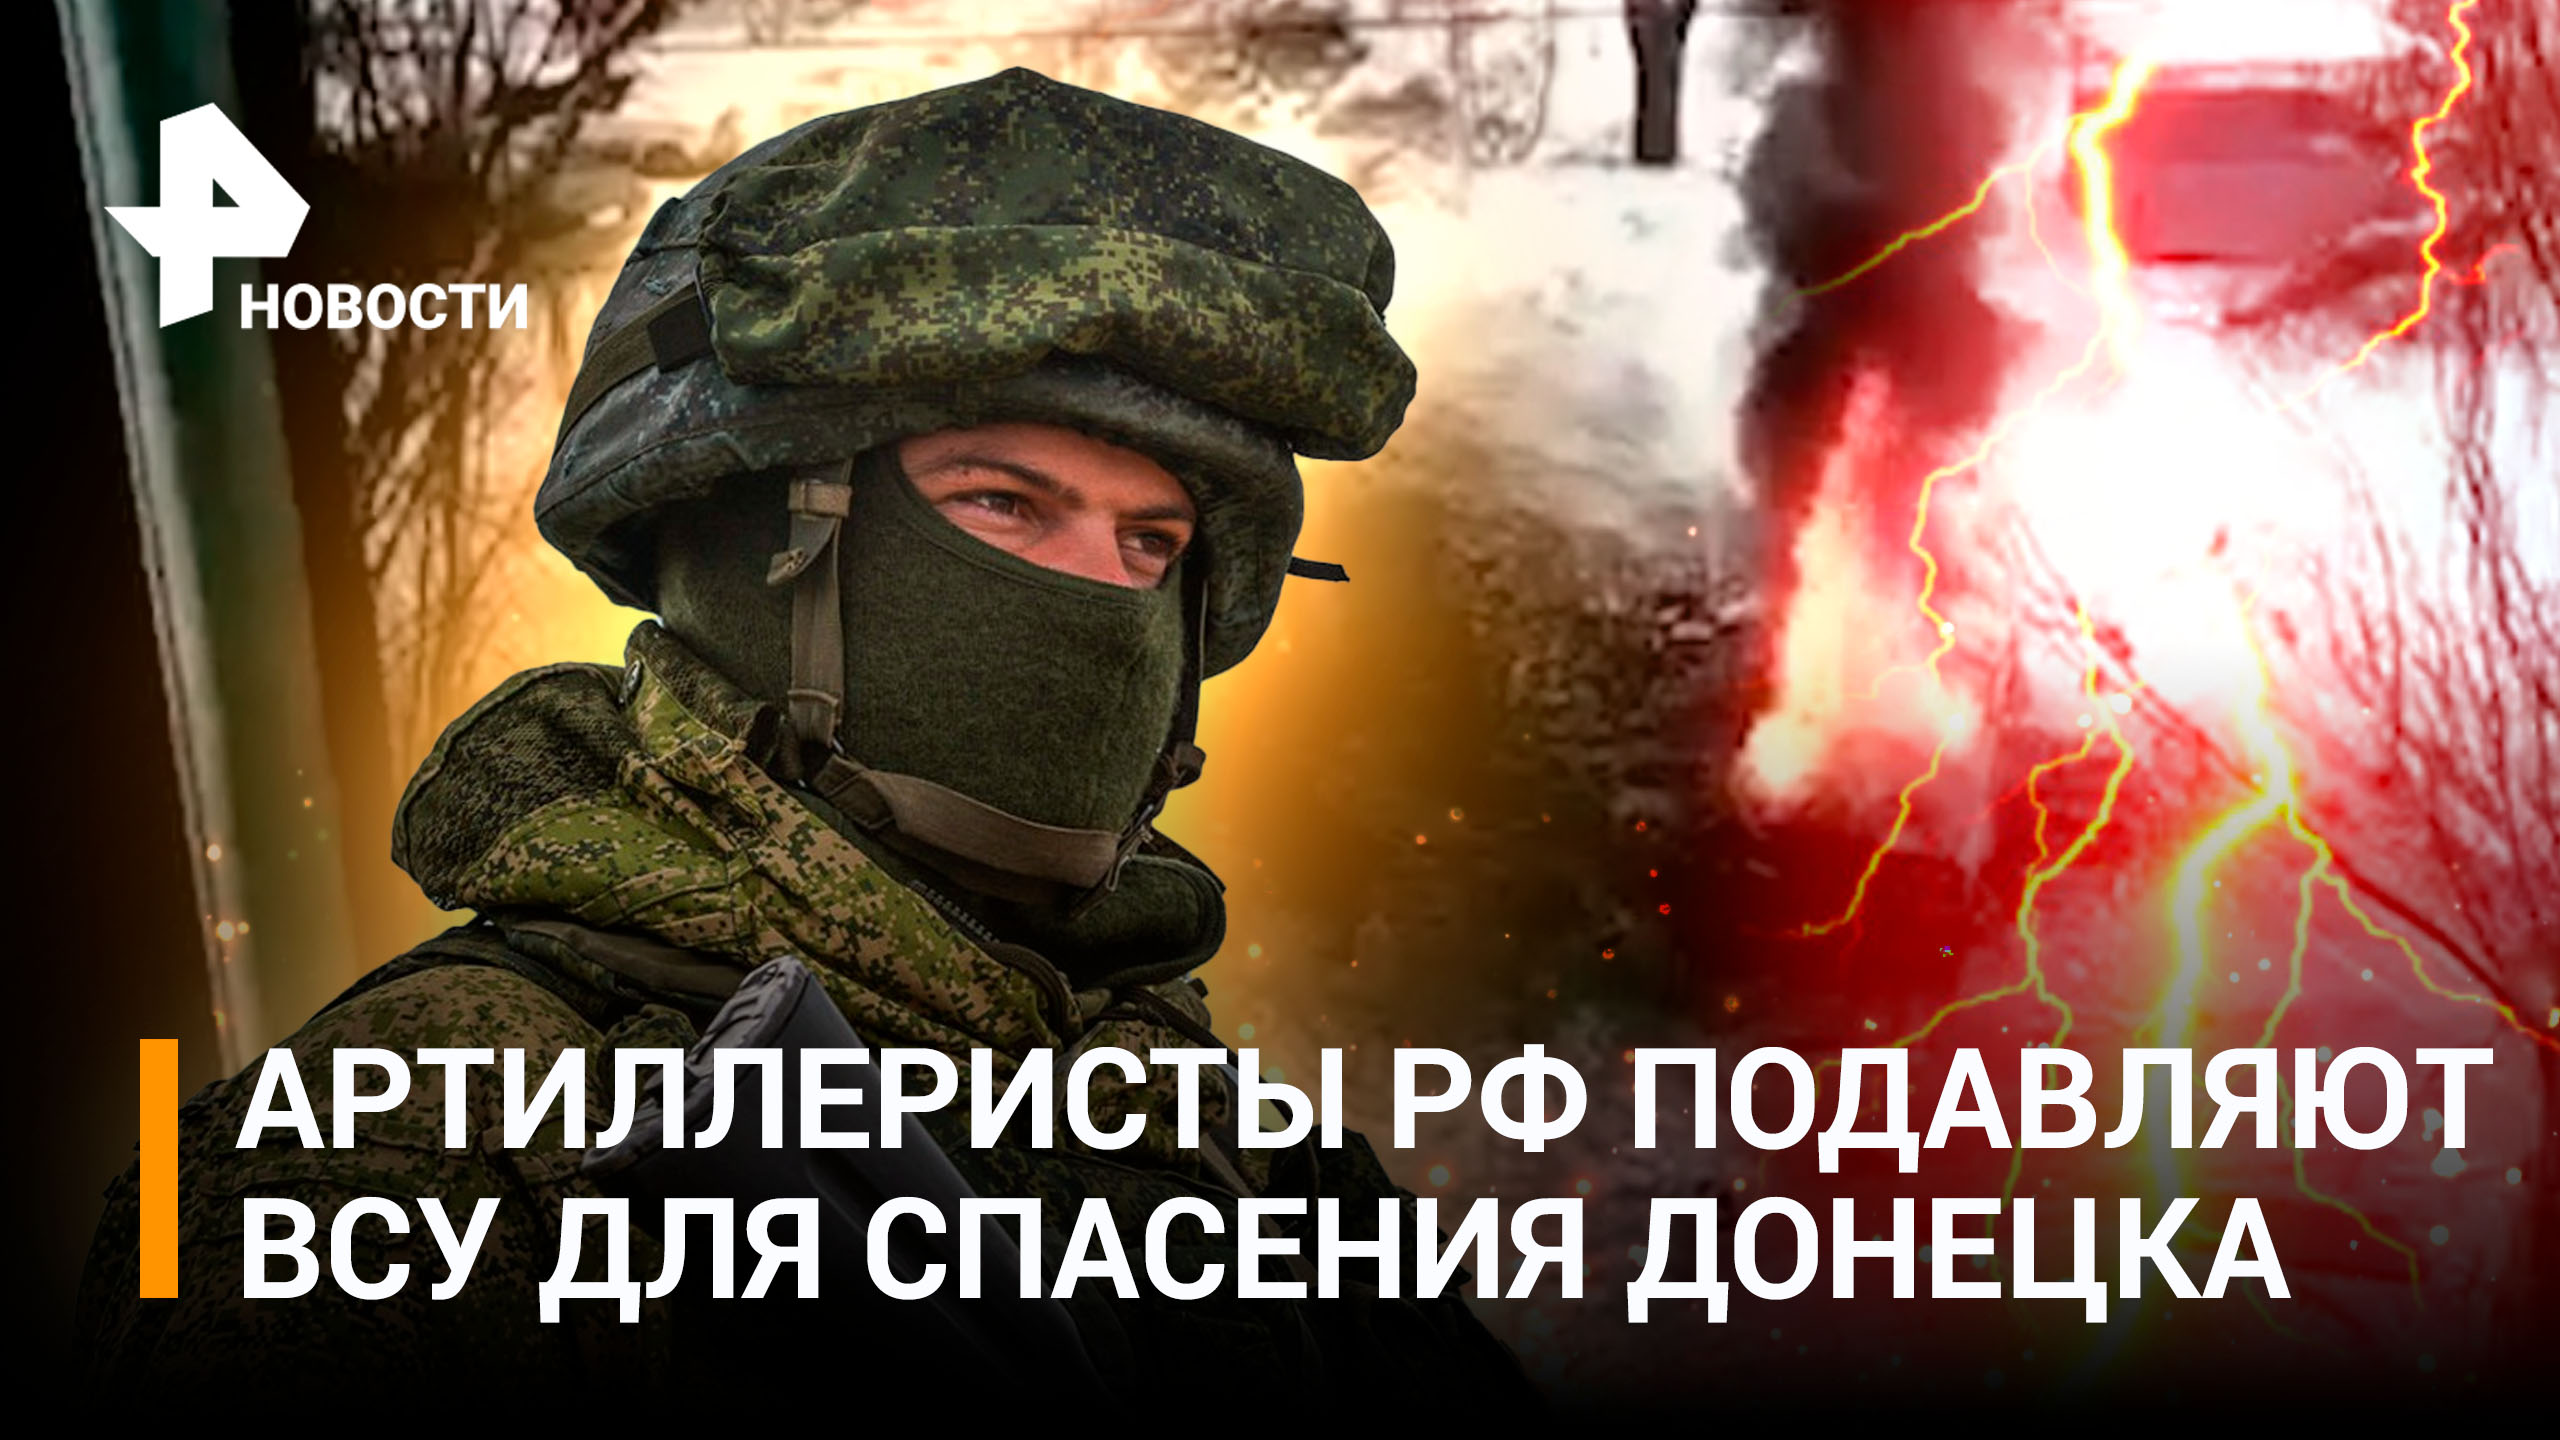 Штурм ради Донецка: как город спасают от огневого прессинга ВСУ наши бойцы на разных направлениях